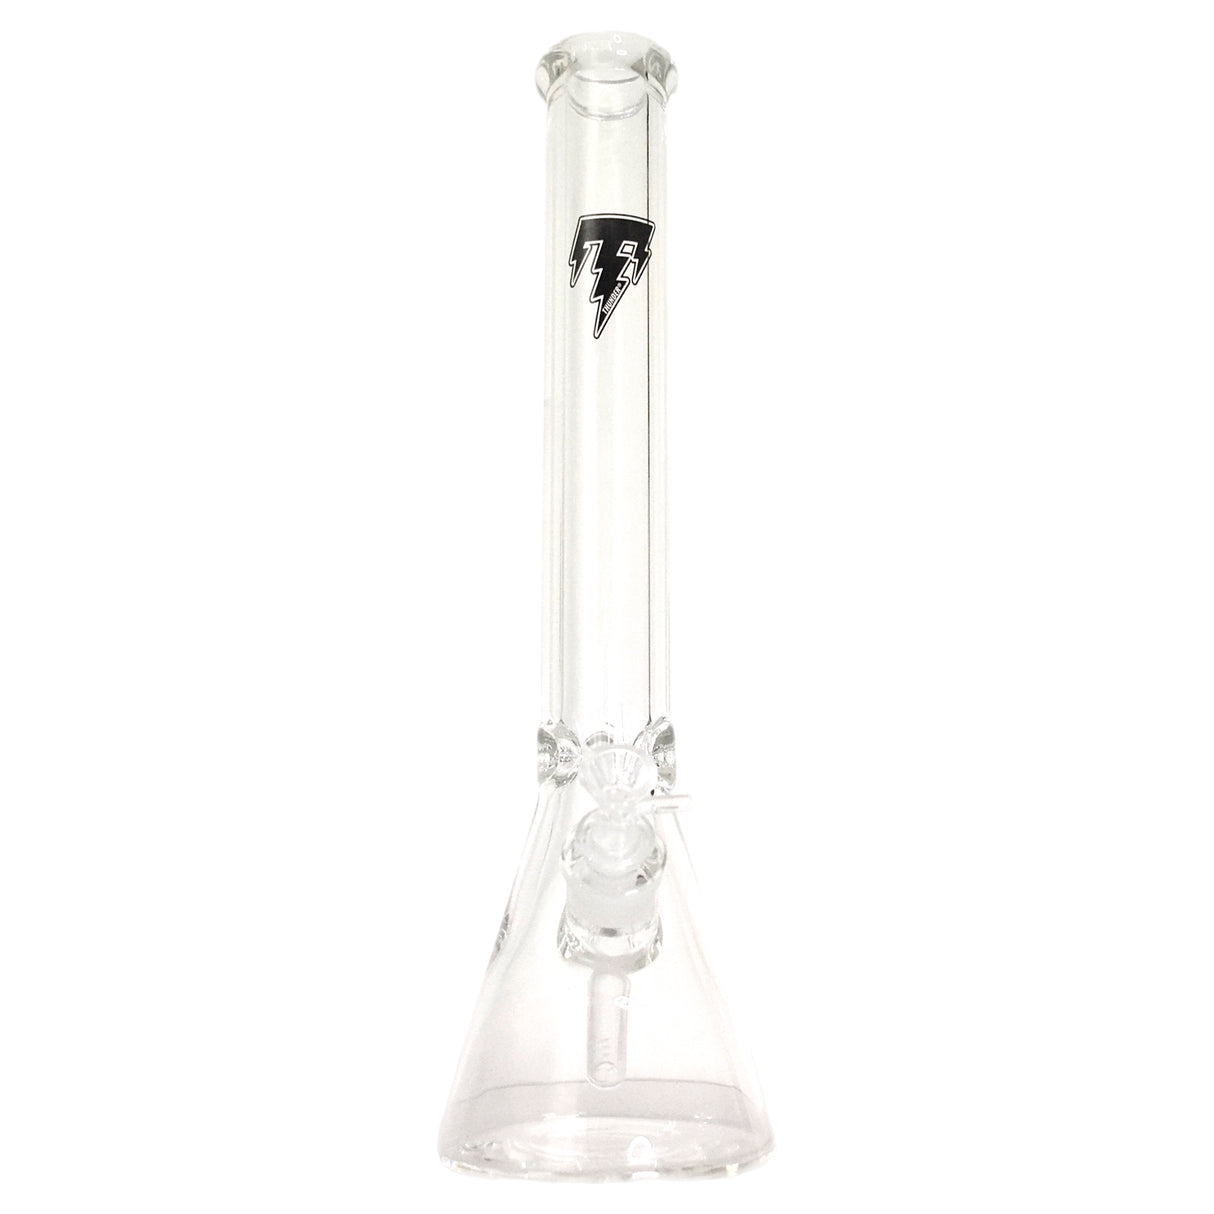 Thunder Glass 18” Thick Glass Beaker Bong